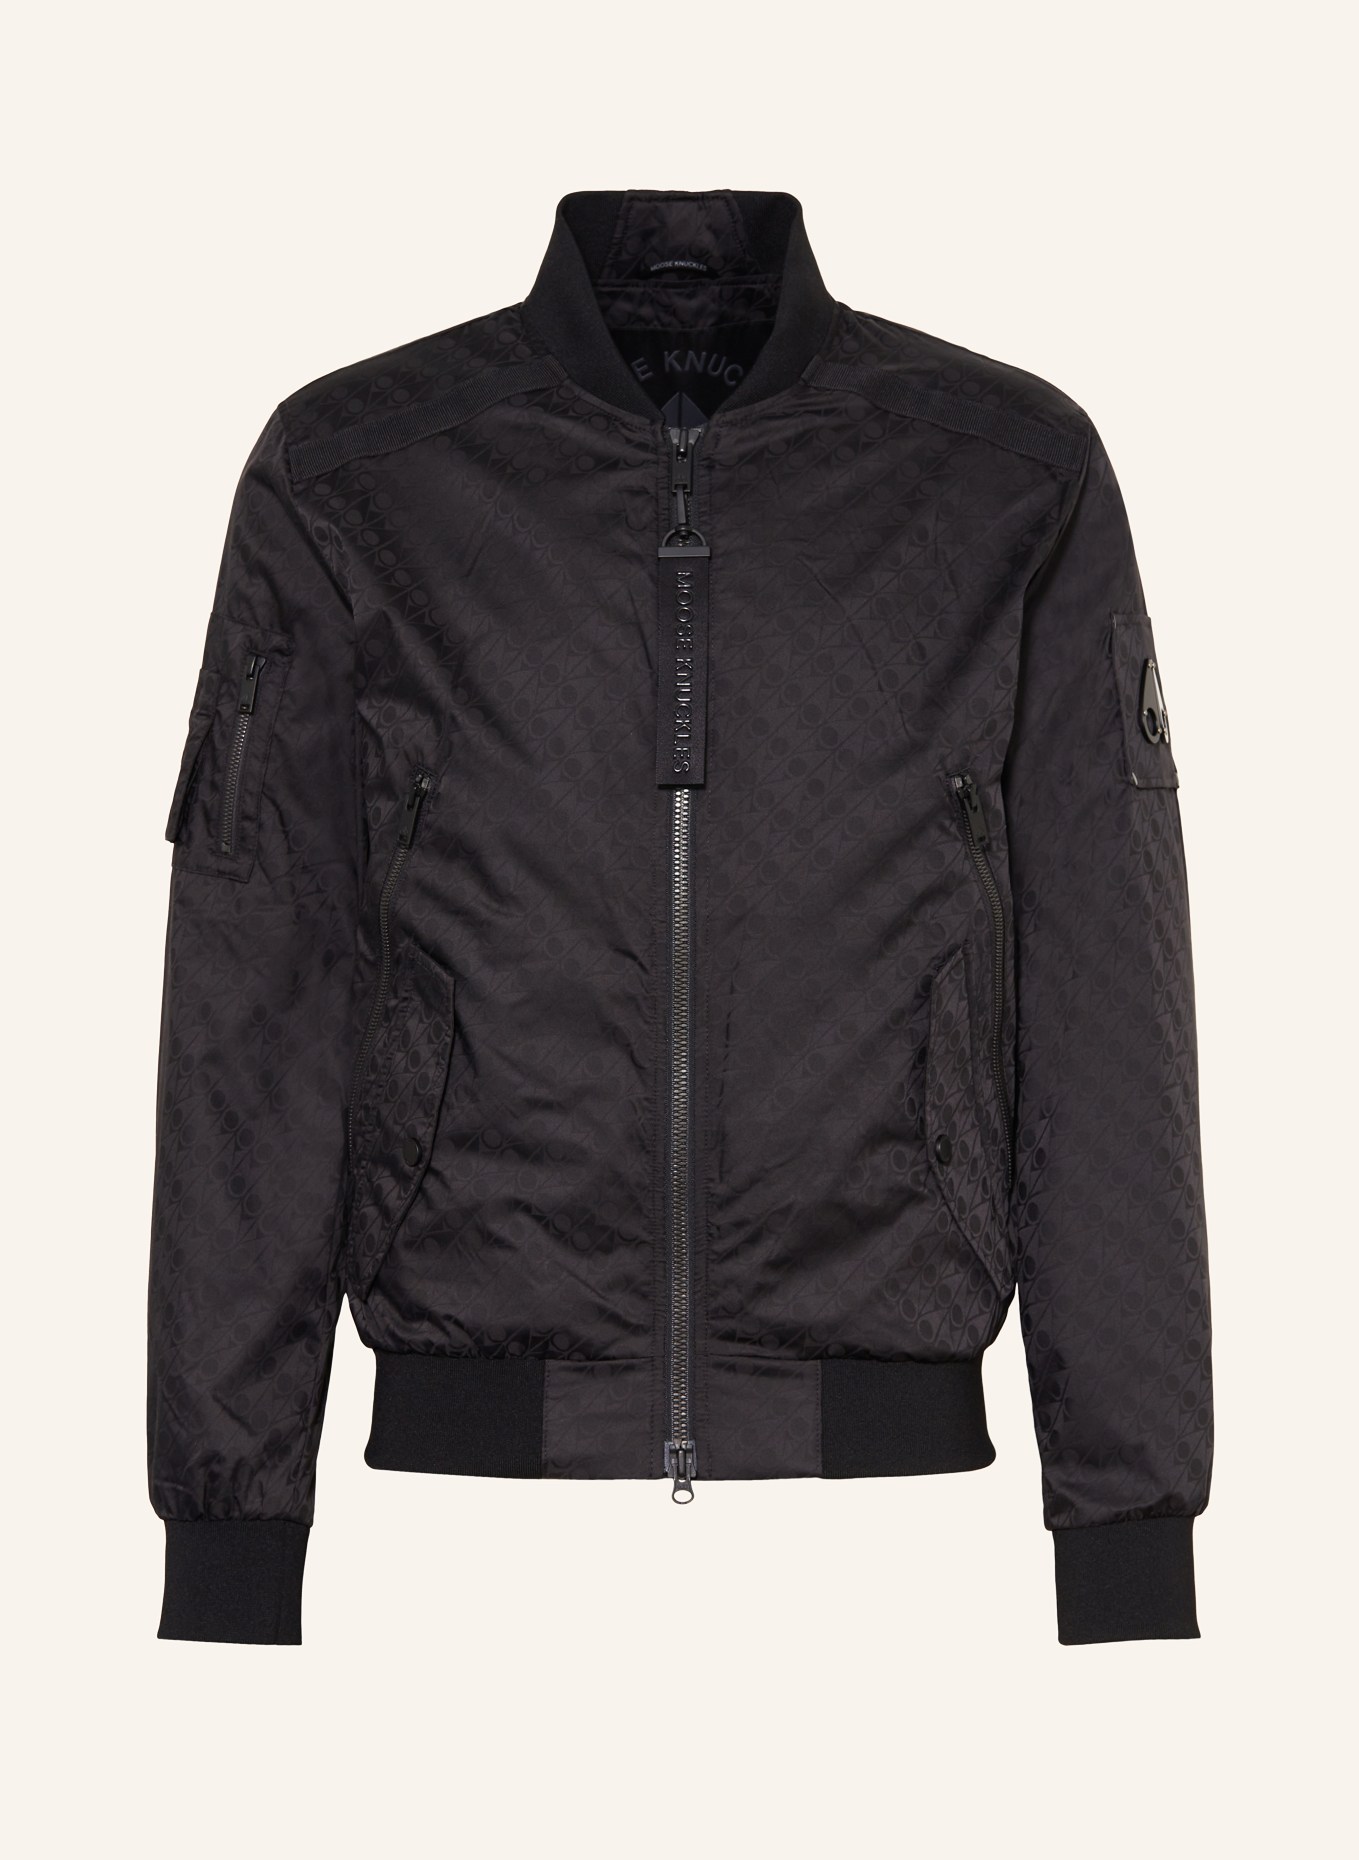 MOOSE KNUCKLES Bomber jacket COURVILLE, Color: BLACK (Image 1)